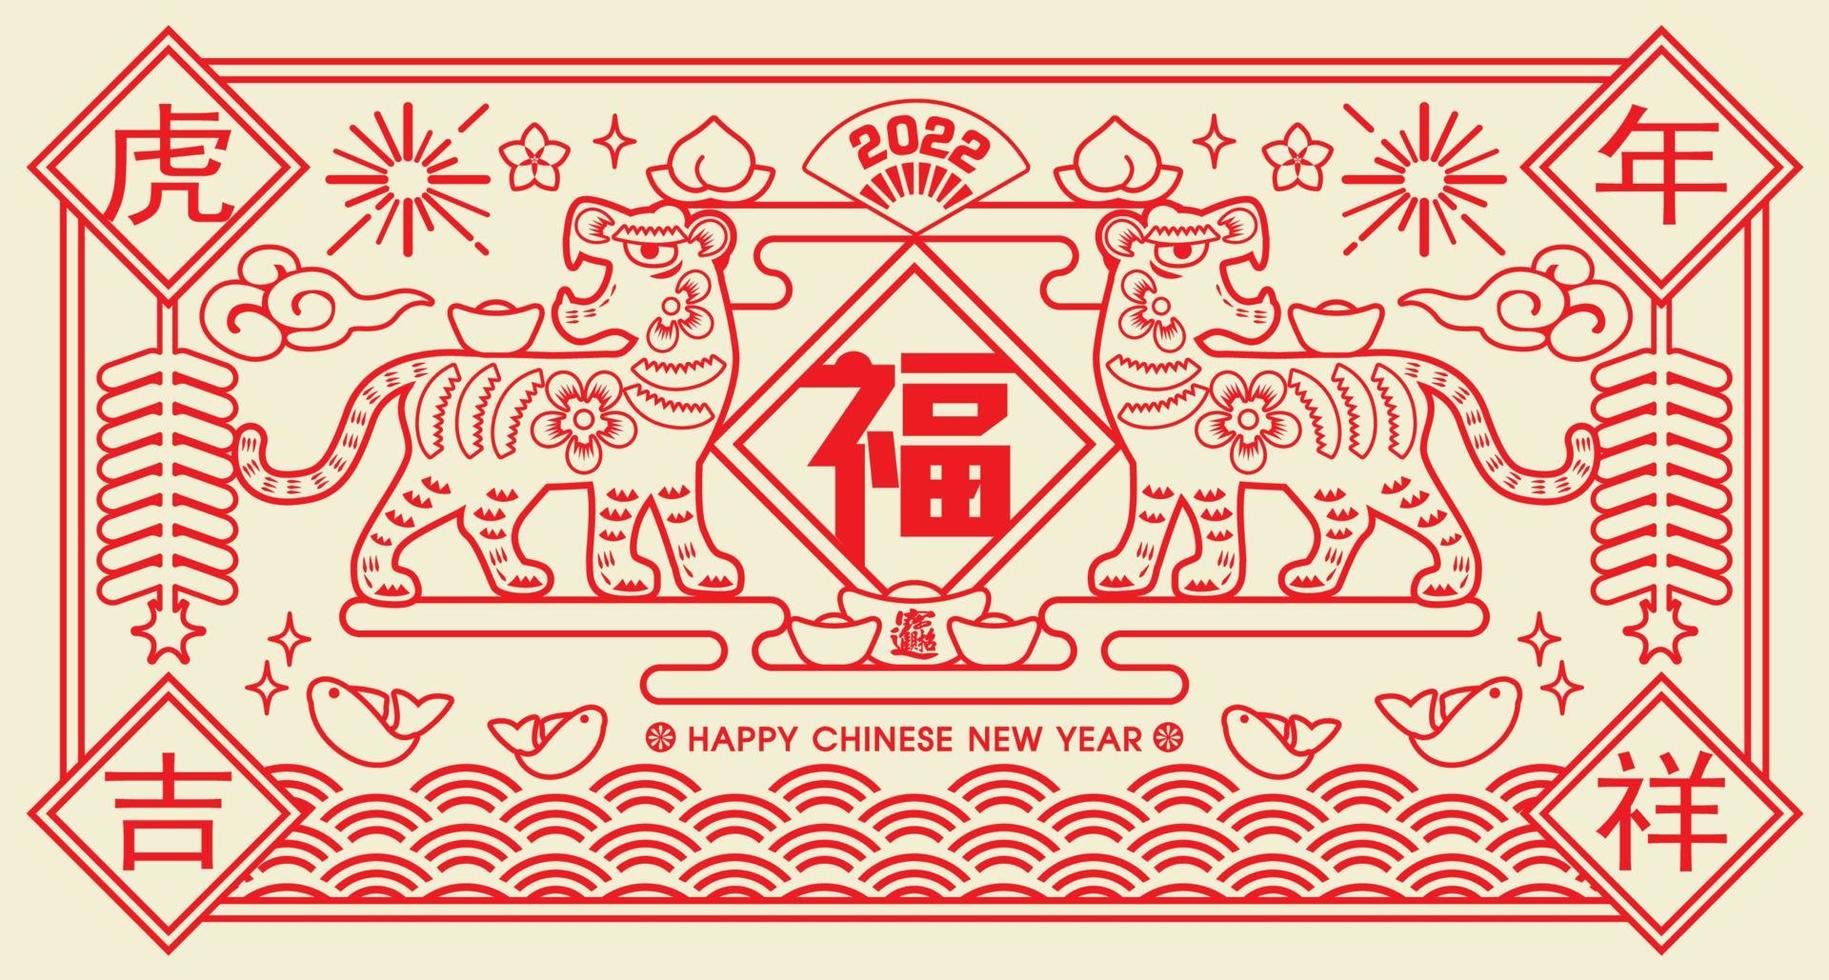 2022 chinesisches neujahr tiger papier schneiden vektorillustration. übersetzung glückverheißendes jahr des tigers, glücksjahr pro vektor